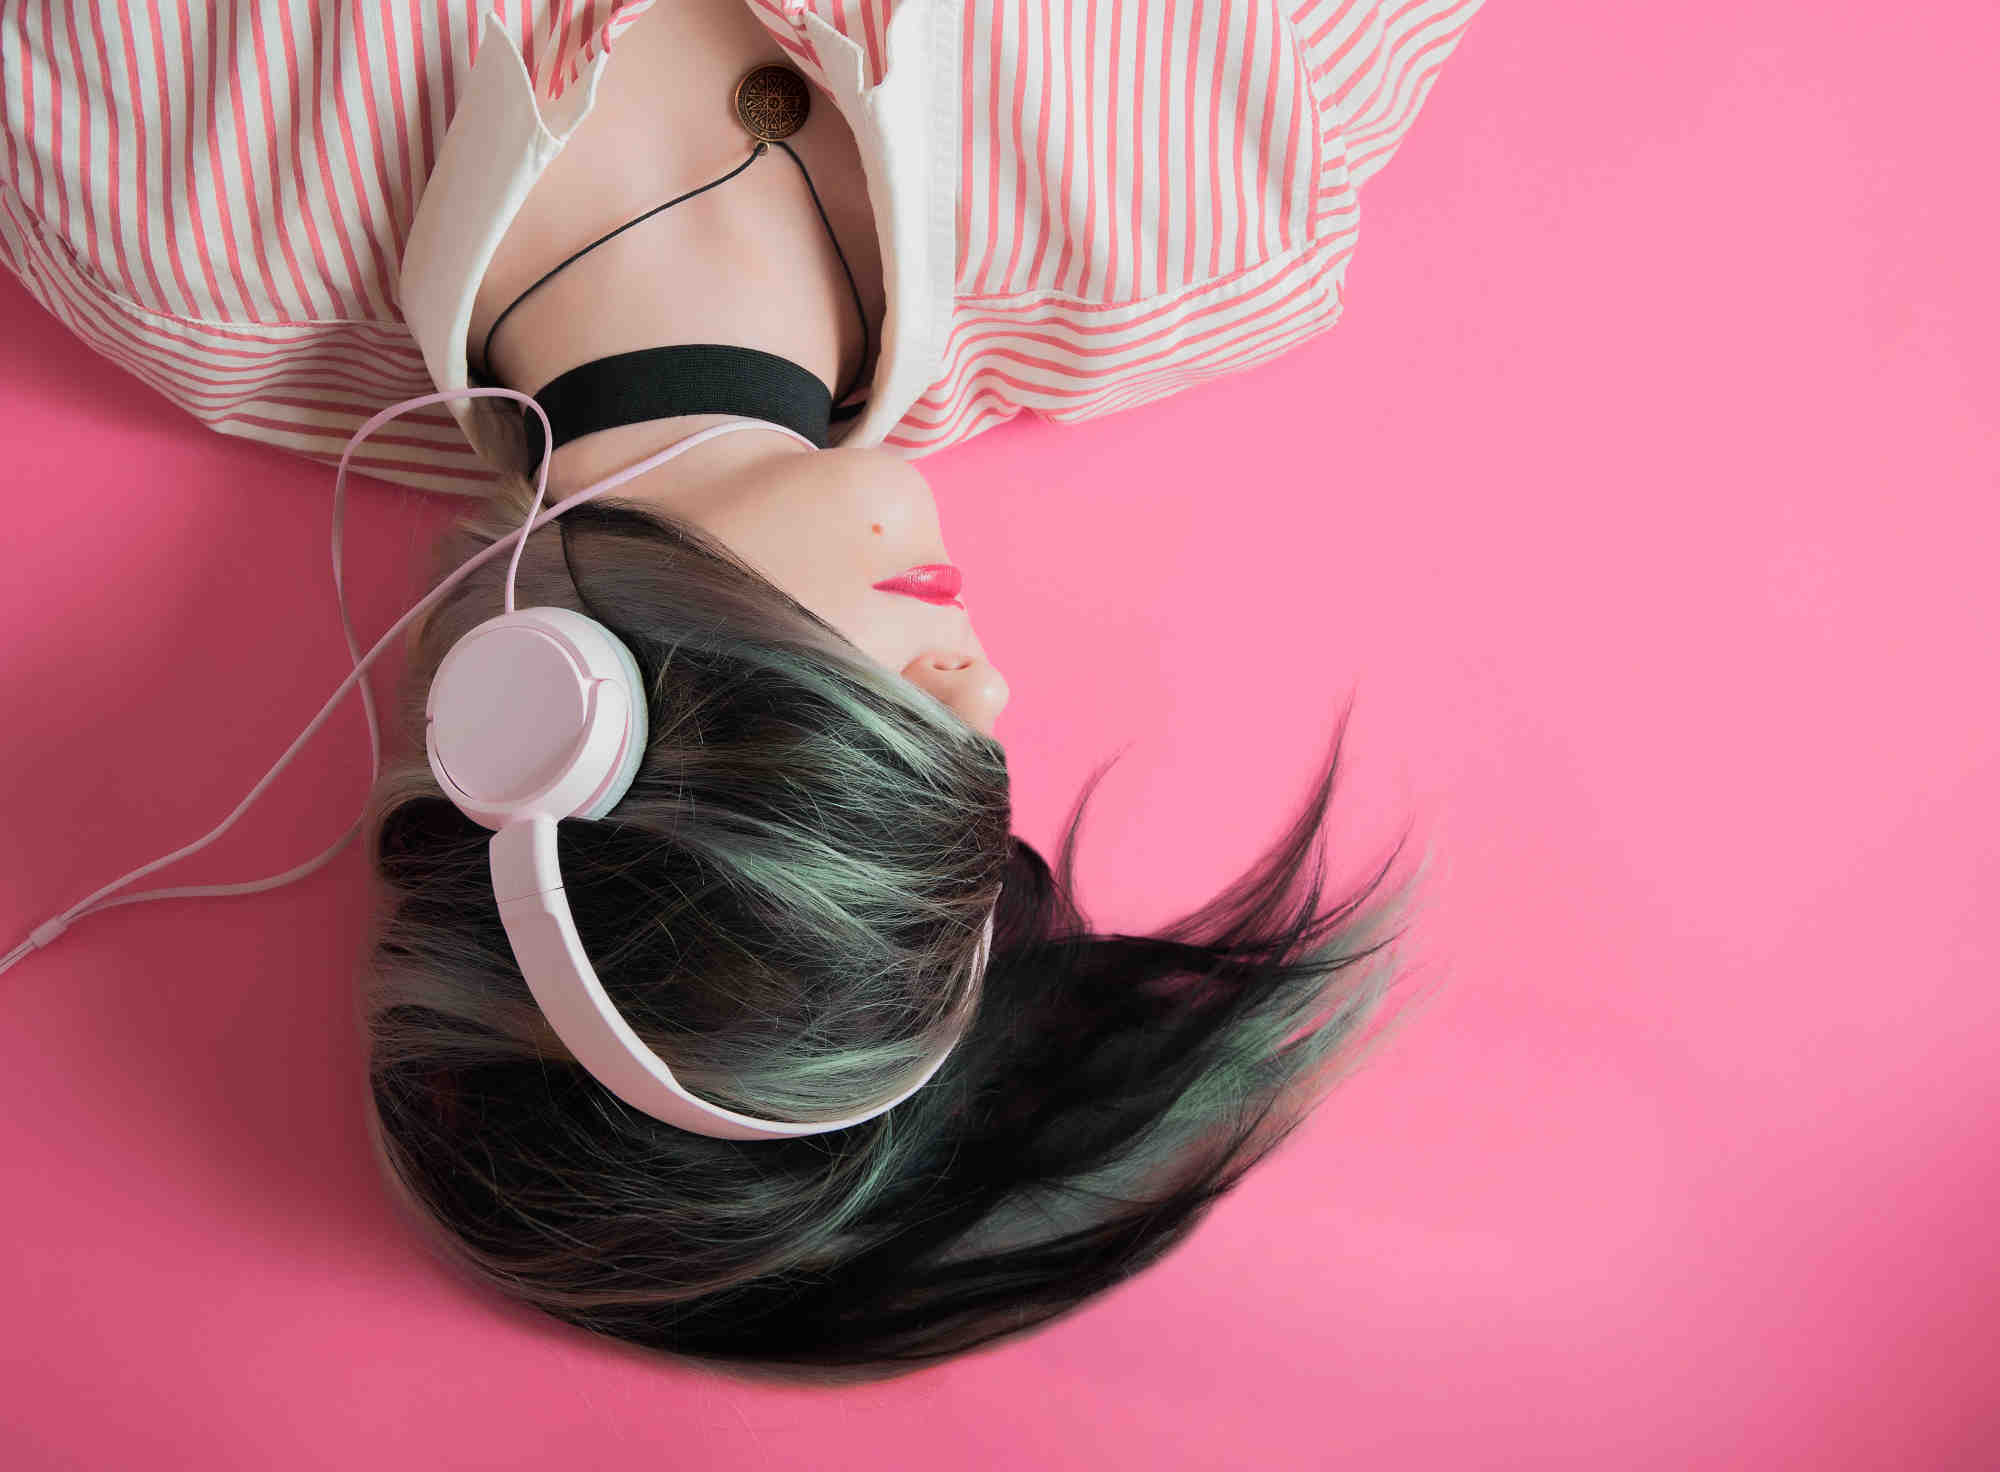 Les bienfaits de la musique pour réduire l'anxiété avant l'anesthésie